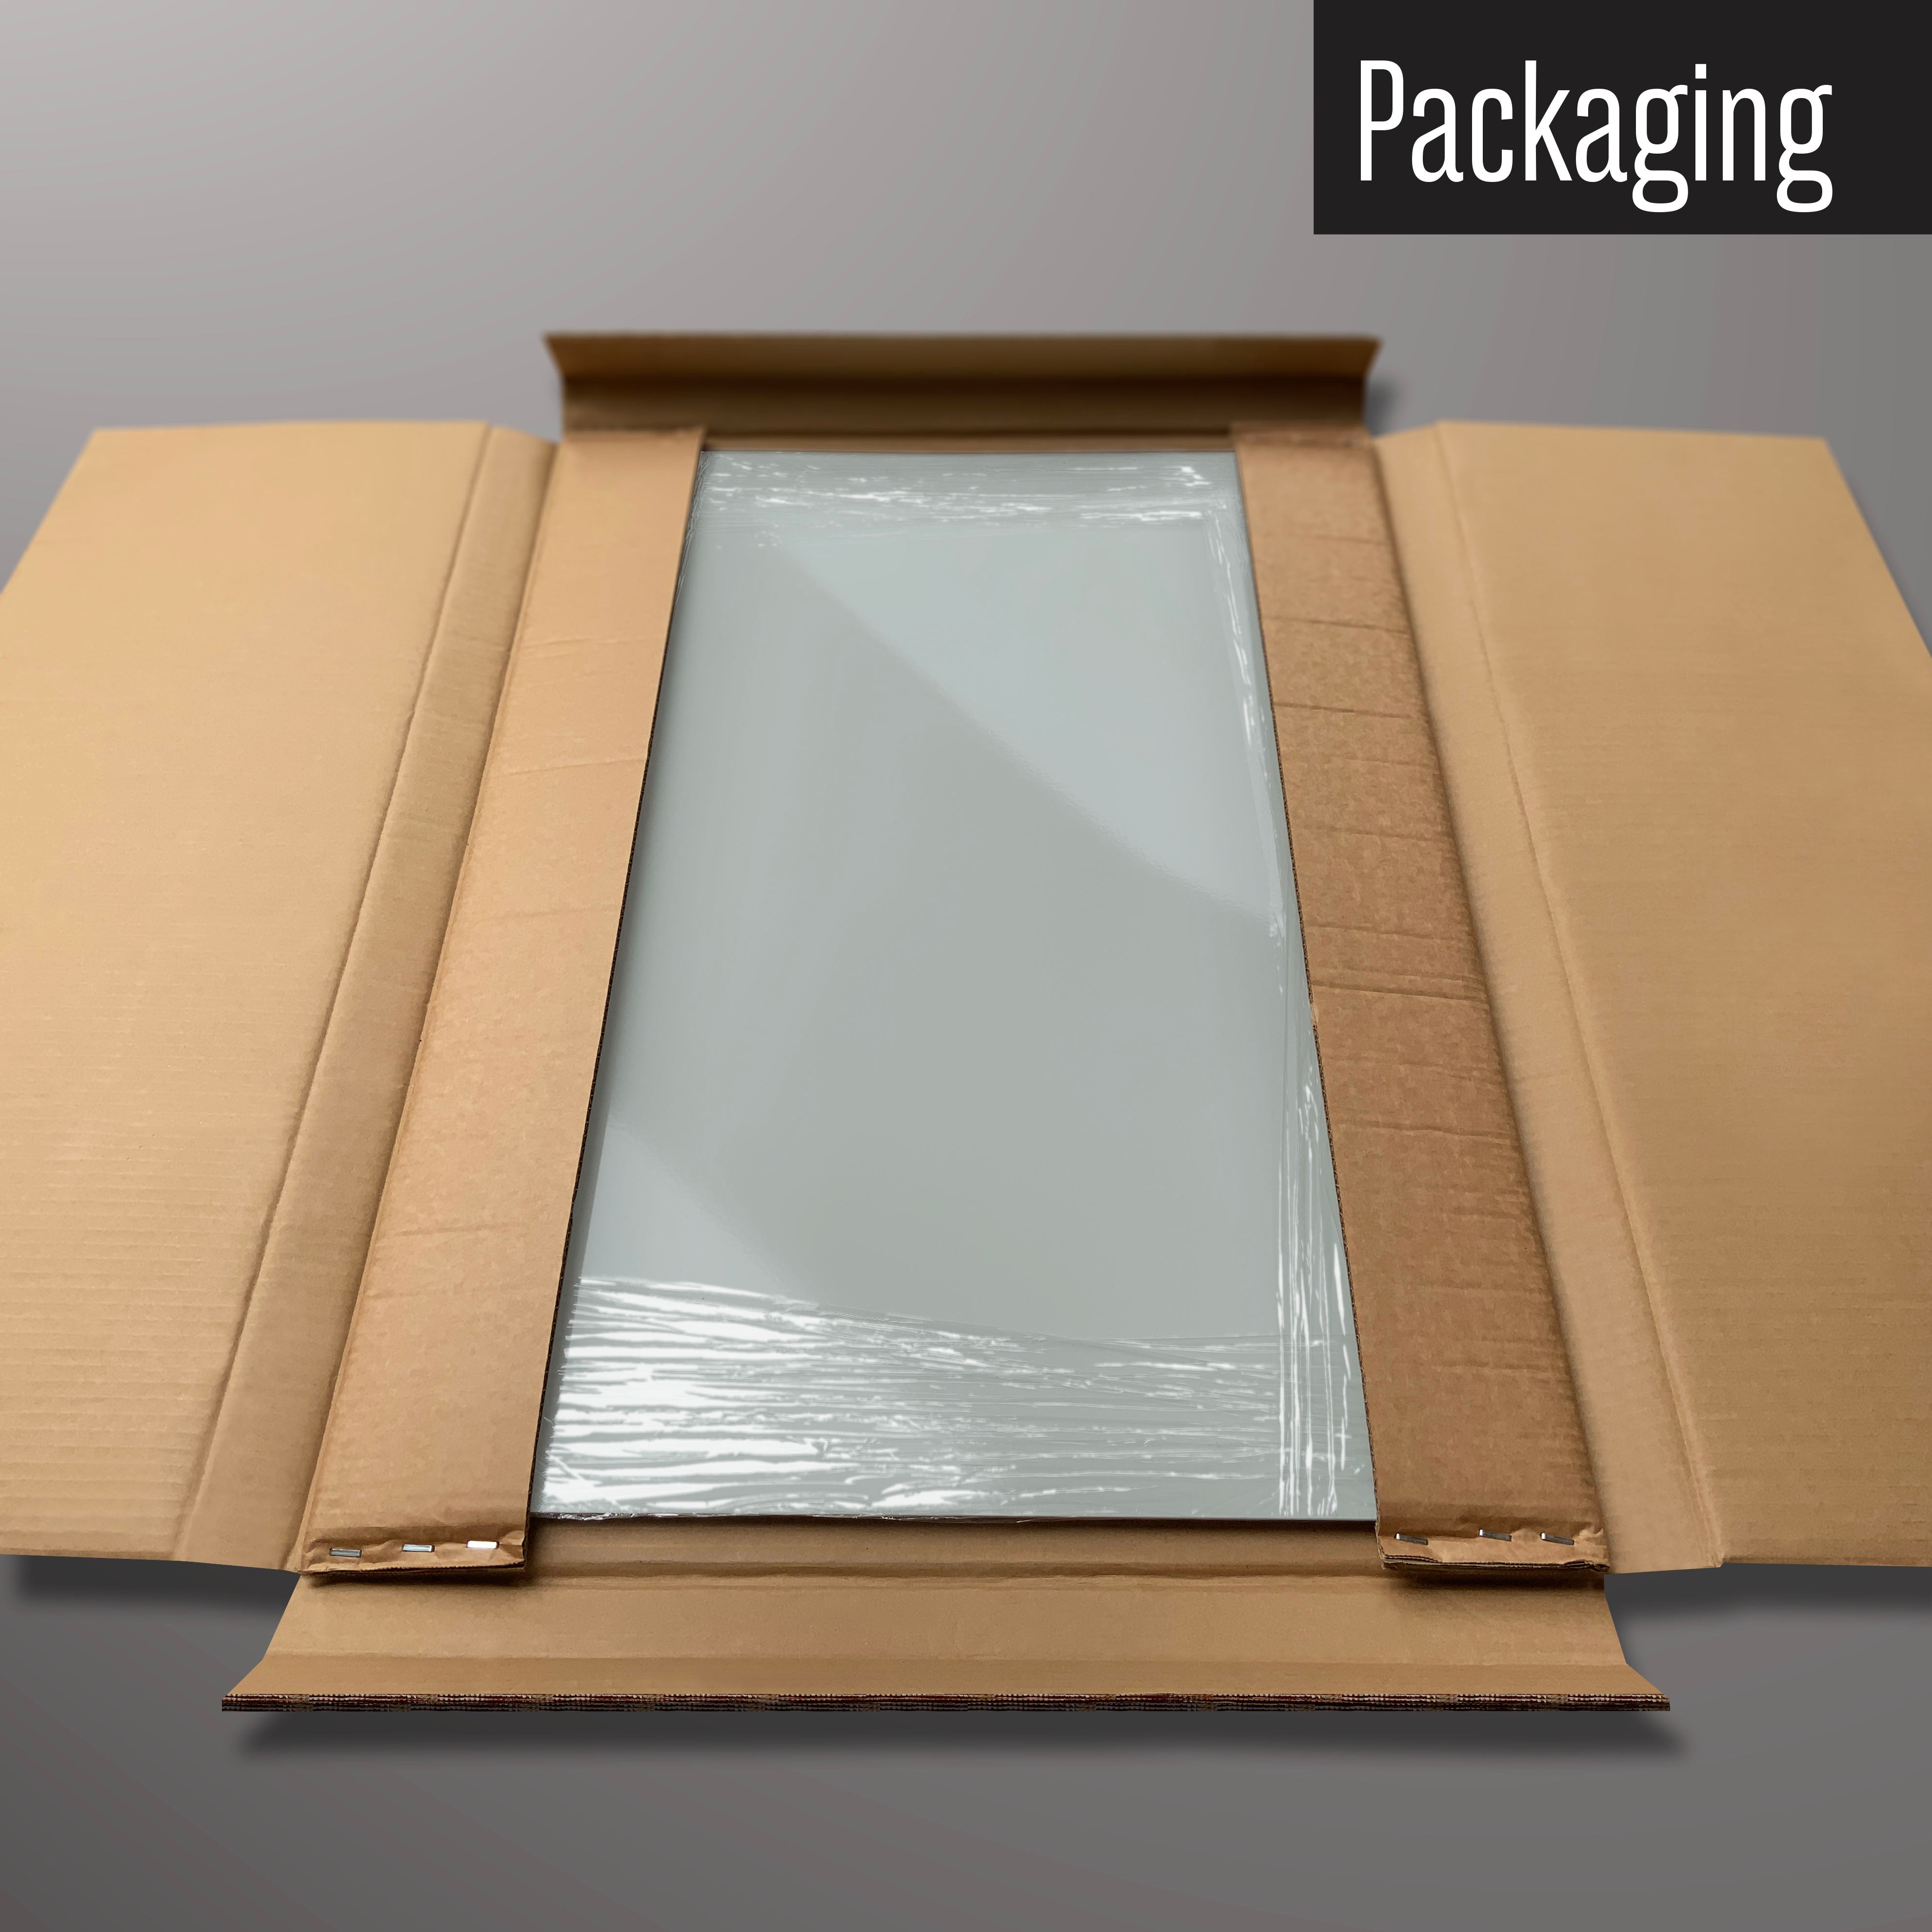 A plain grey magnetic board in it’s cardboard packaging